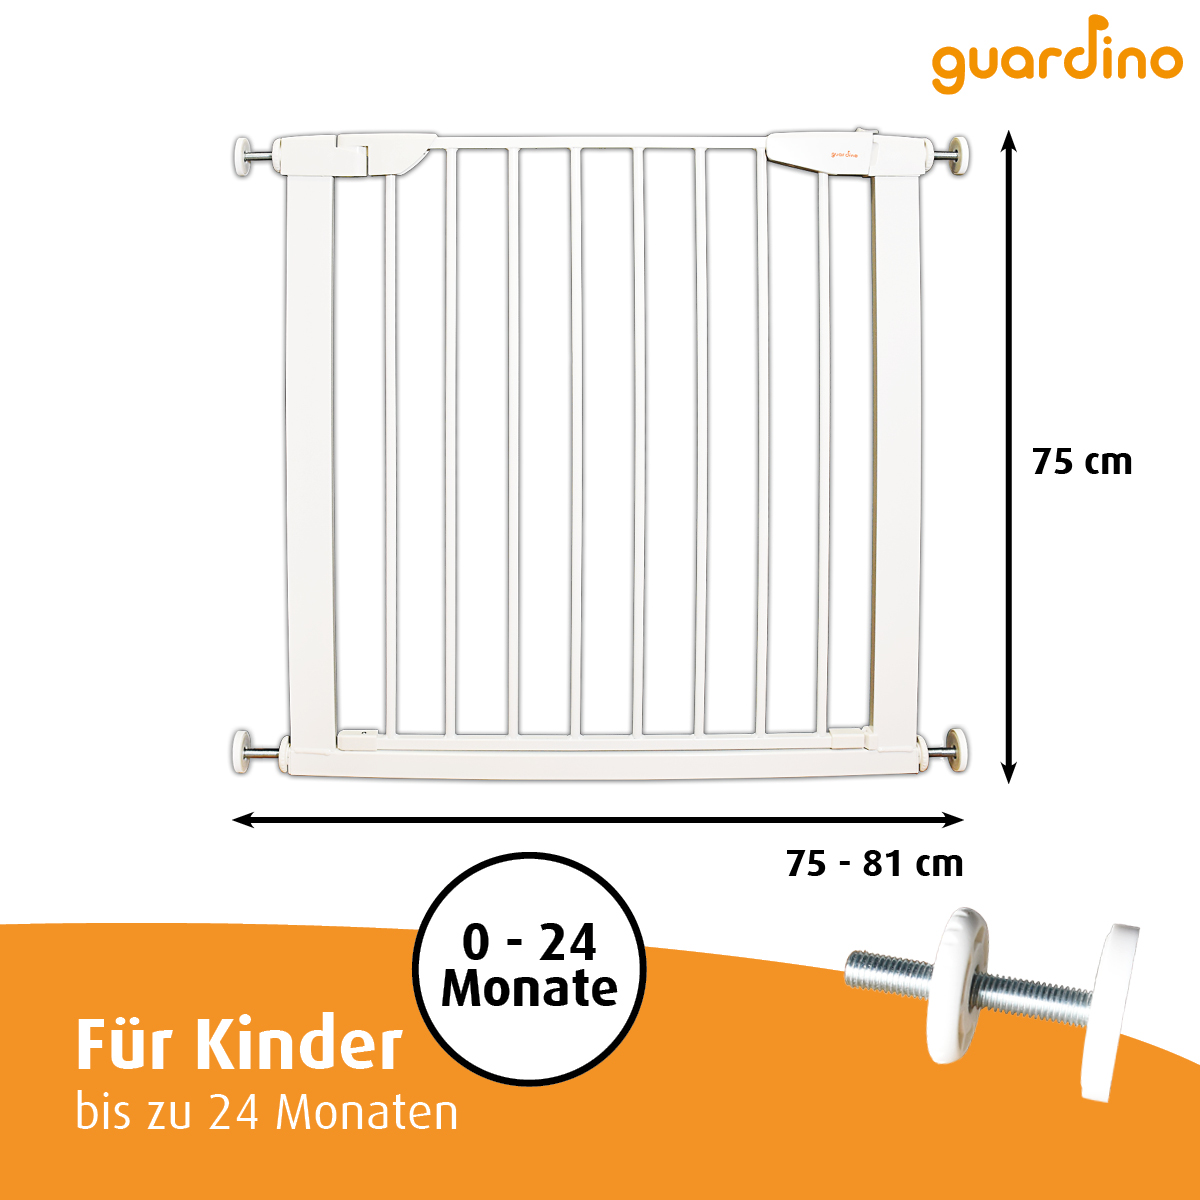 Guardino Türschutzgitter mit 1x 7cm und 1x 14cm Verlängerung, 96-102 cm, Treppenschutzgitter ohne Bohren